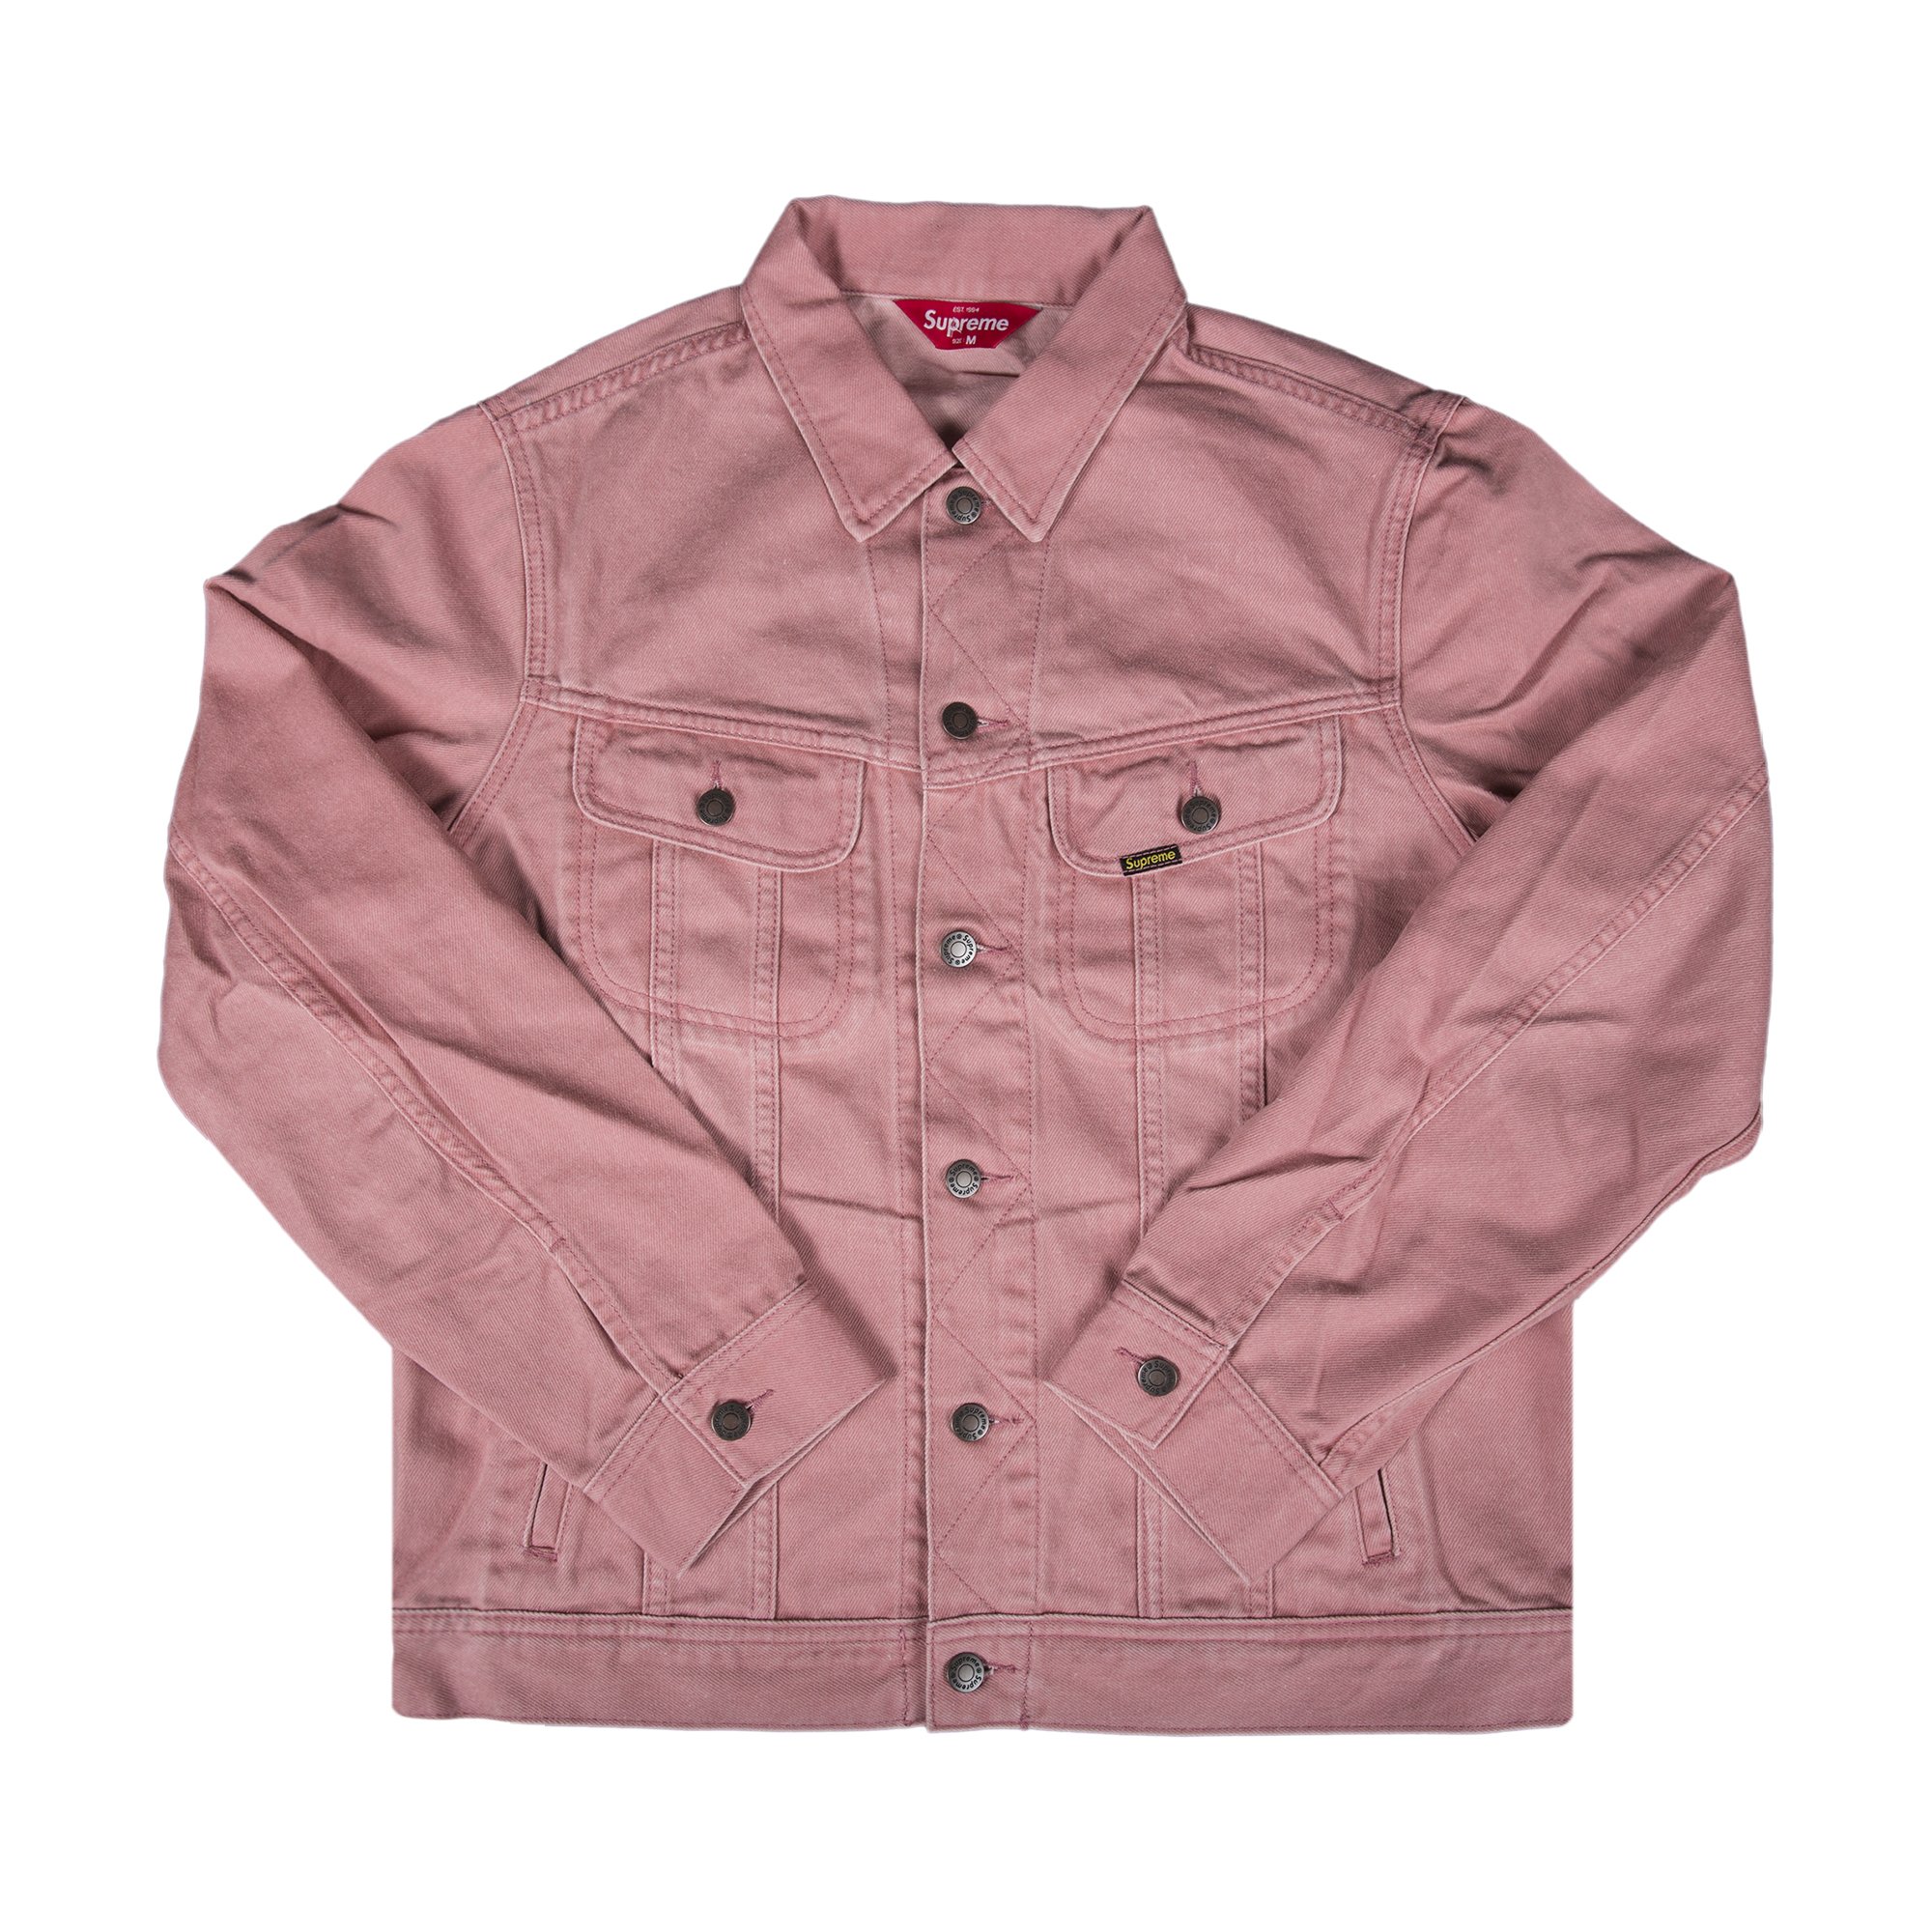 Buy Supreme Denim Trucker Jacket 'Pink' - SS16J10 PINK | GOAT